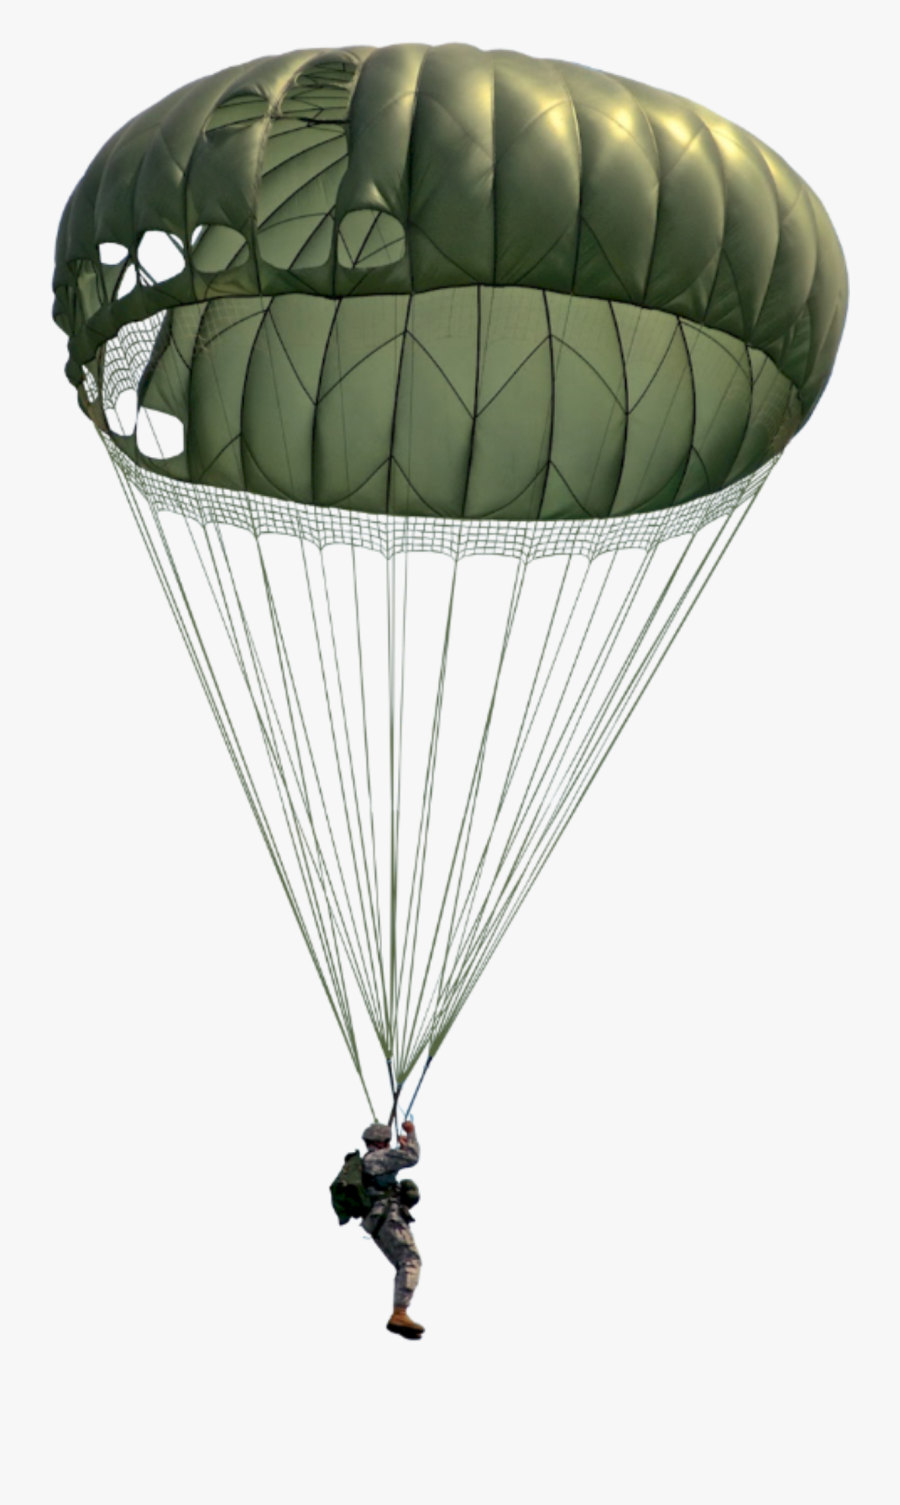 Parachute Transparent Military - Military Parachute Png, Transparent Clipart